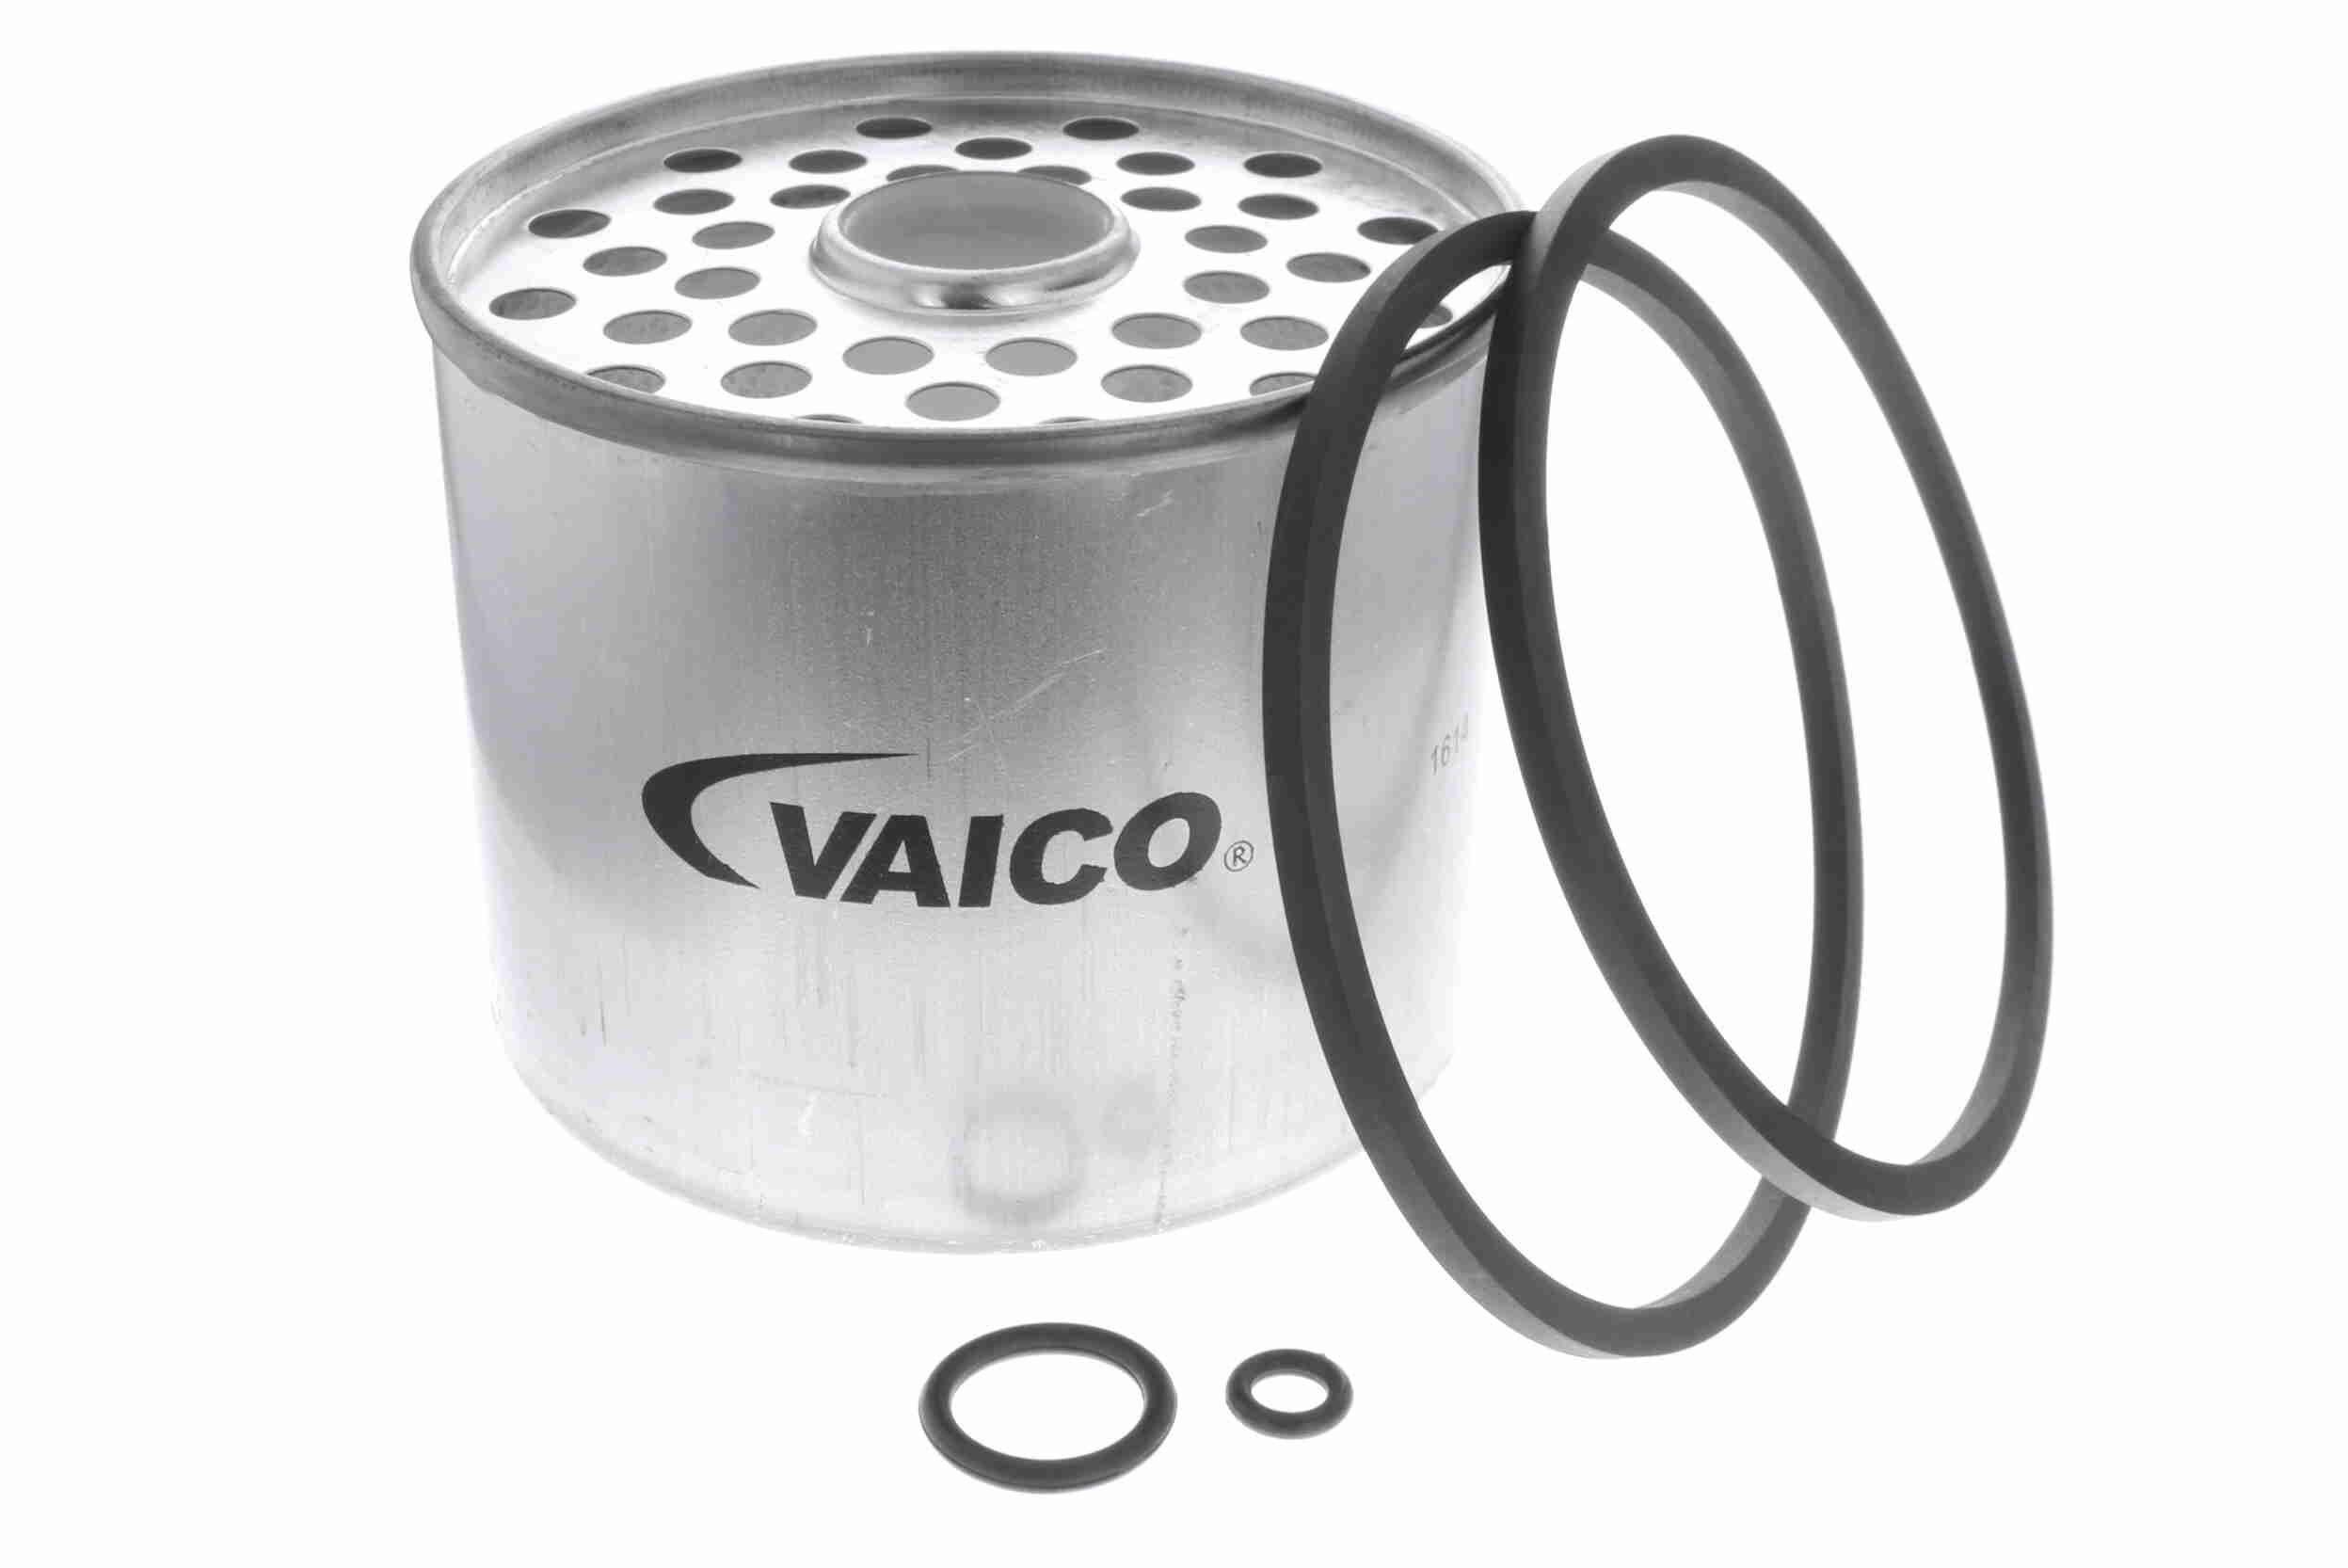 VAICO V25-0108 Fuel filter Filter Insert, Original VAICO Quality